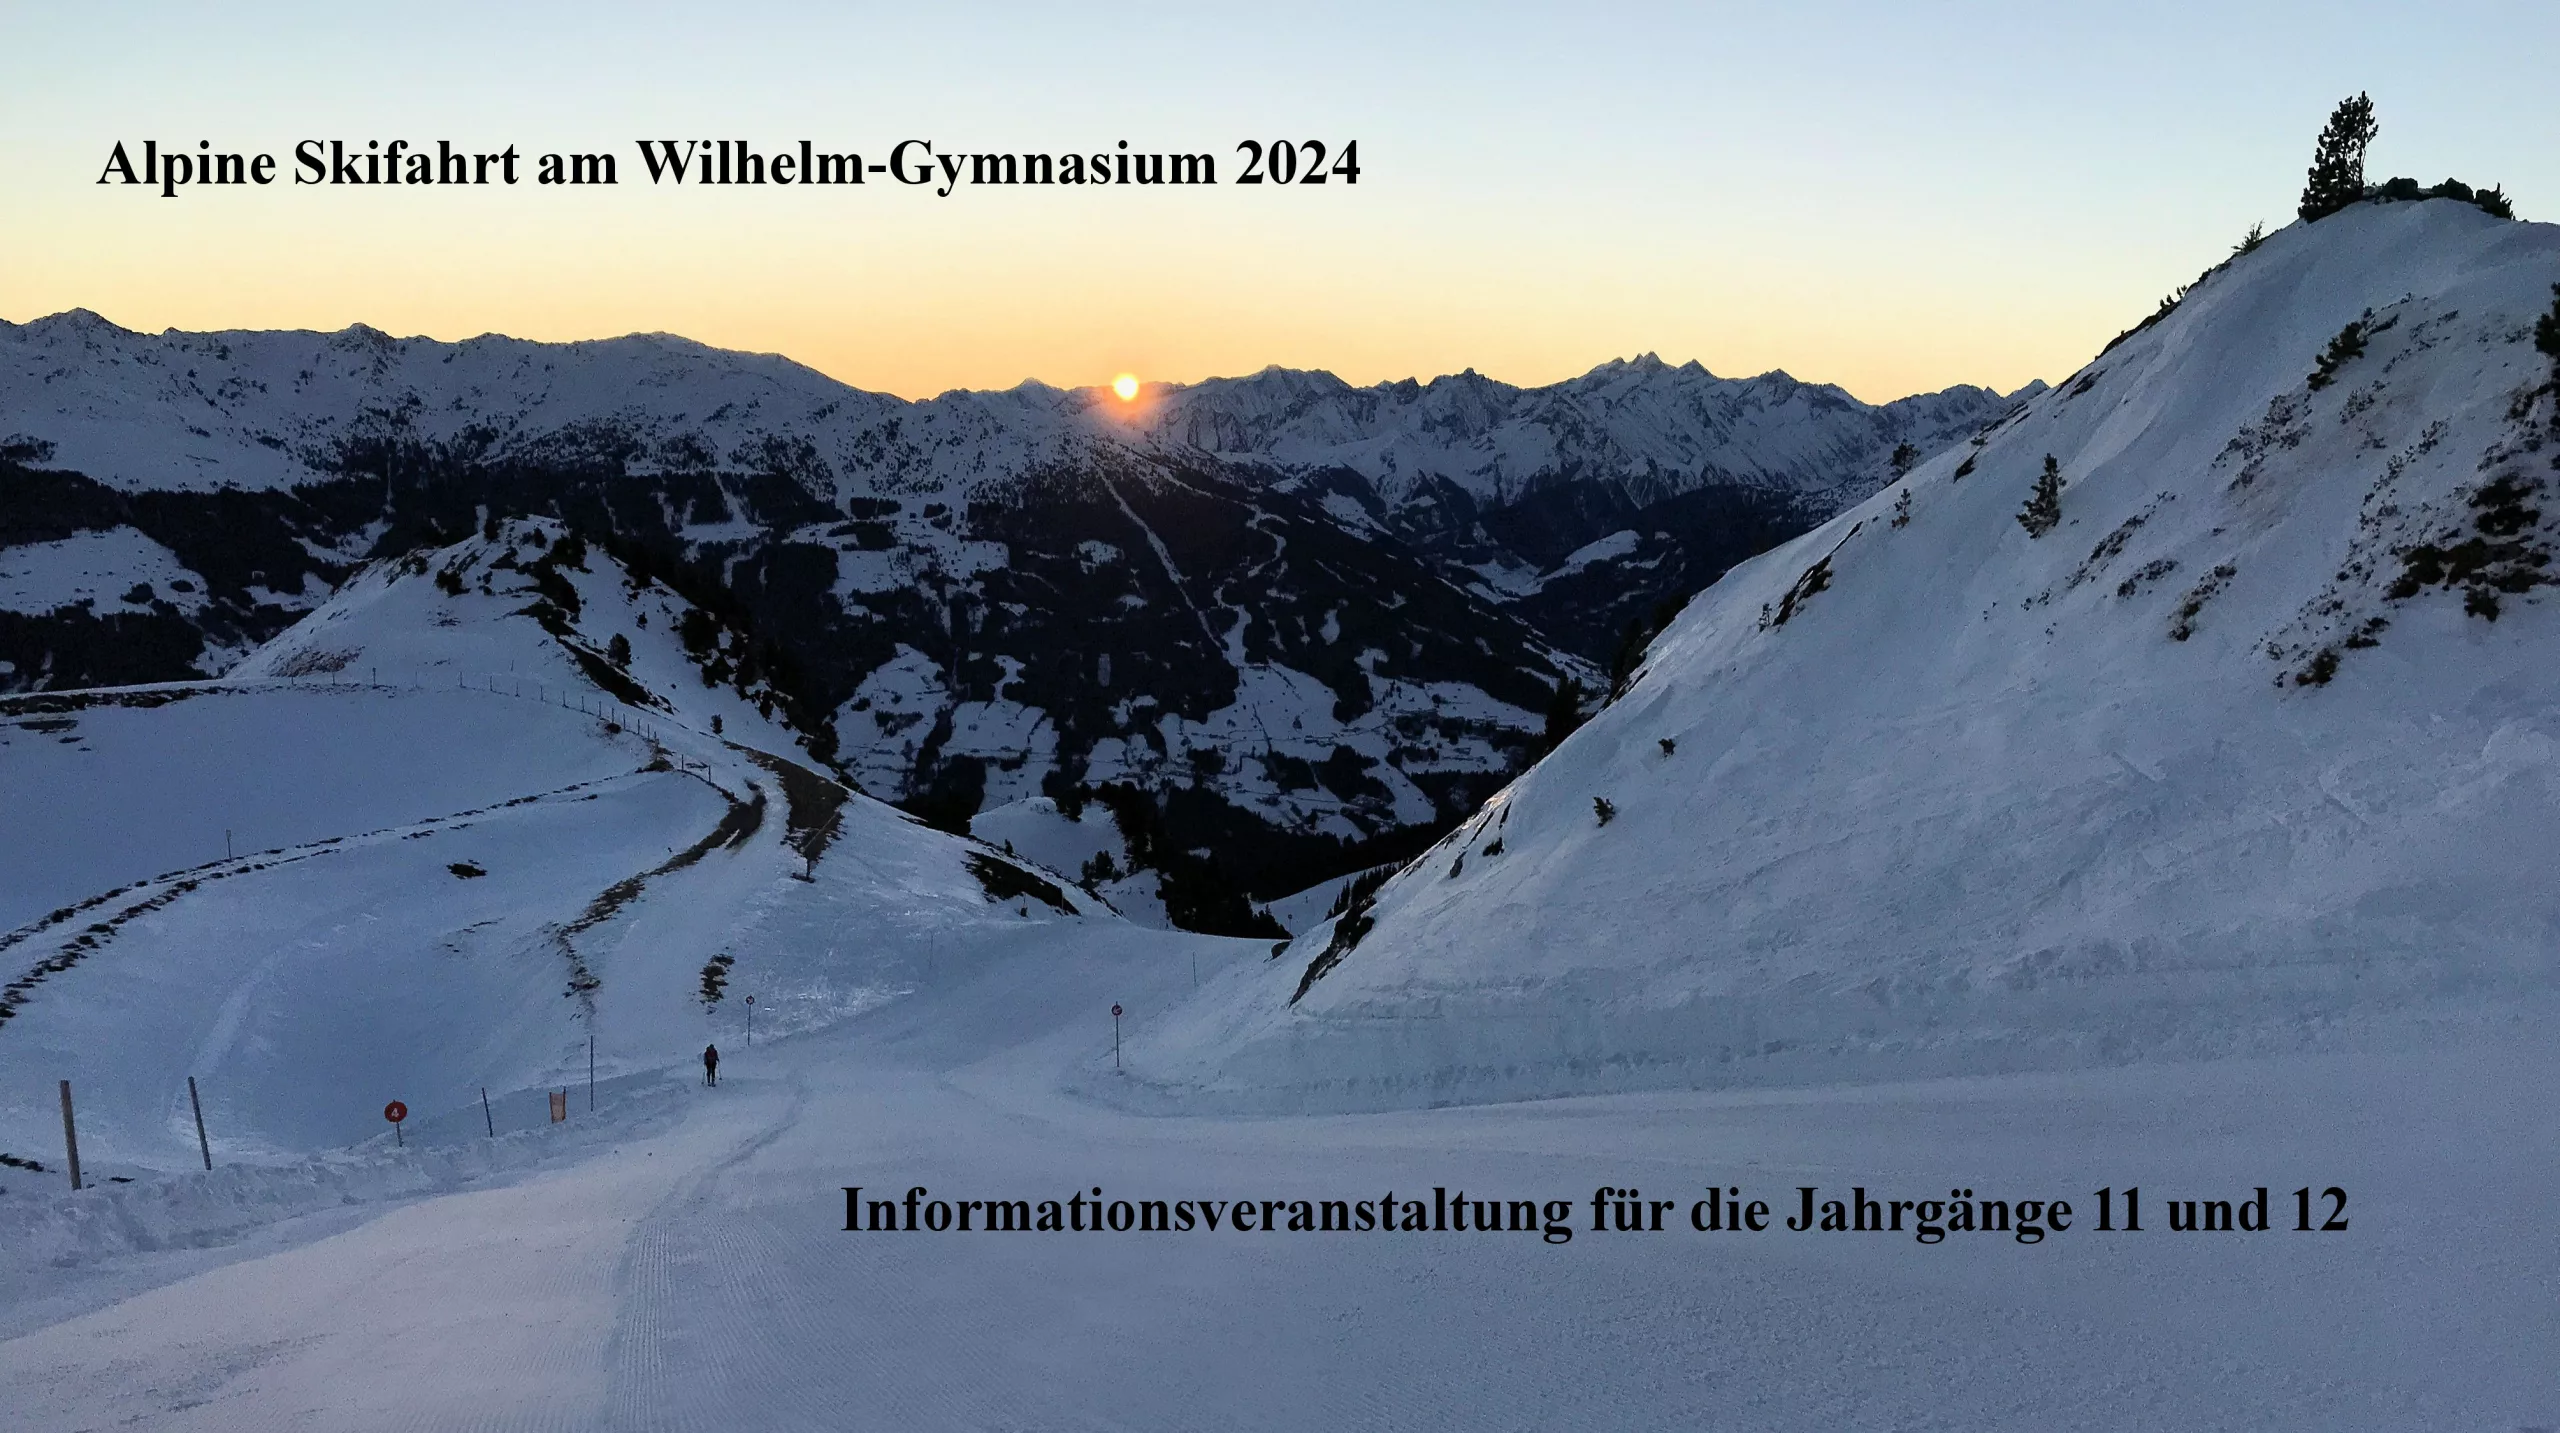 Informationsveranstaltung für die alpine Skifahrt